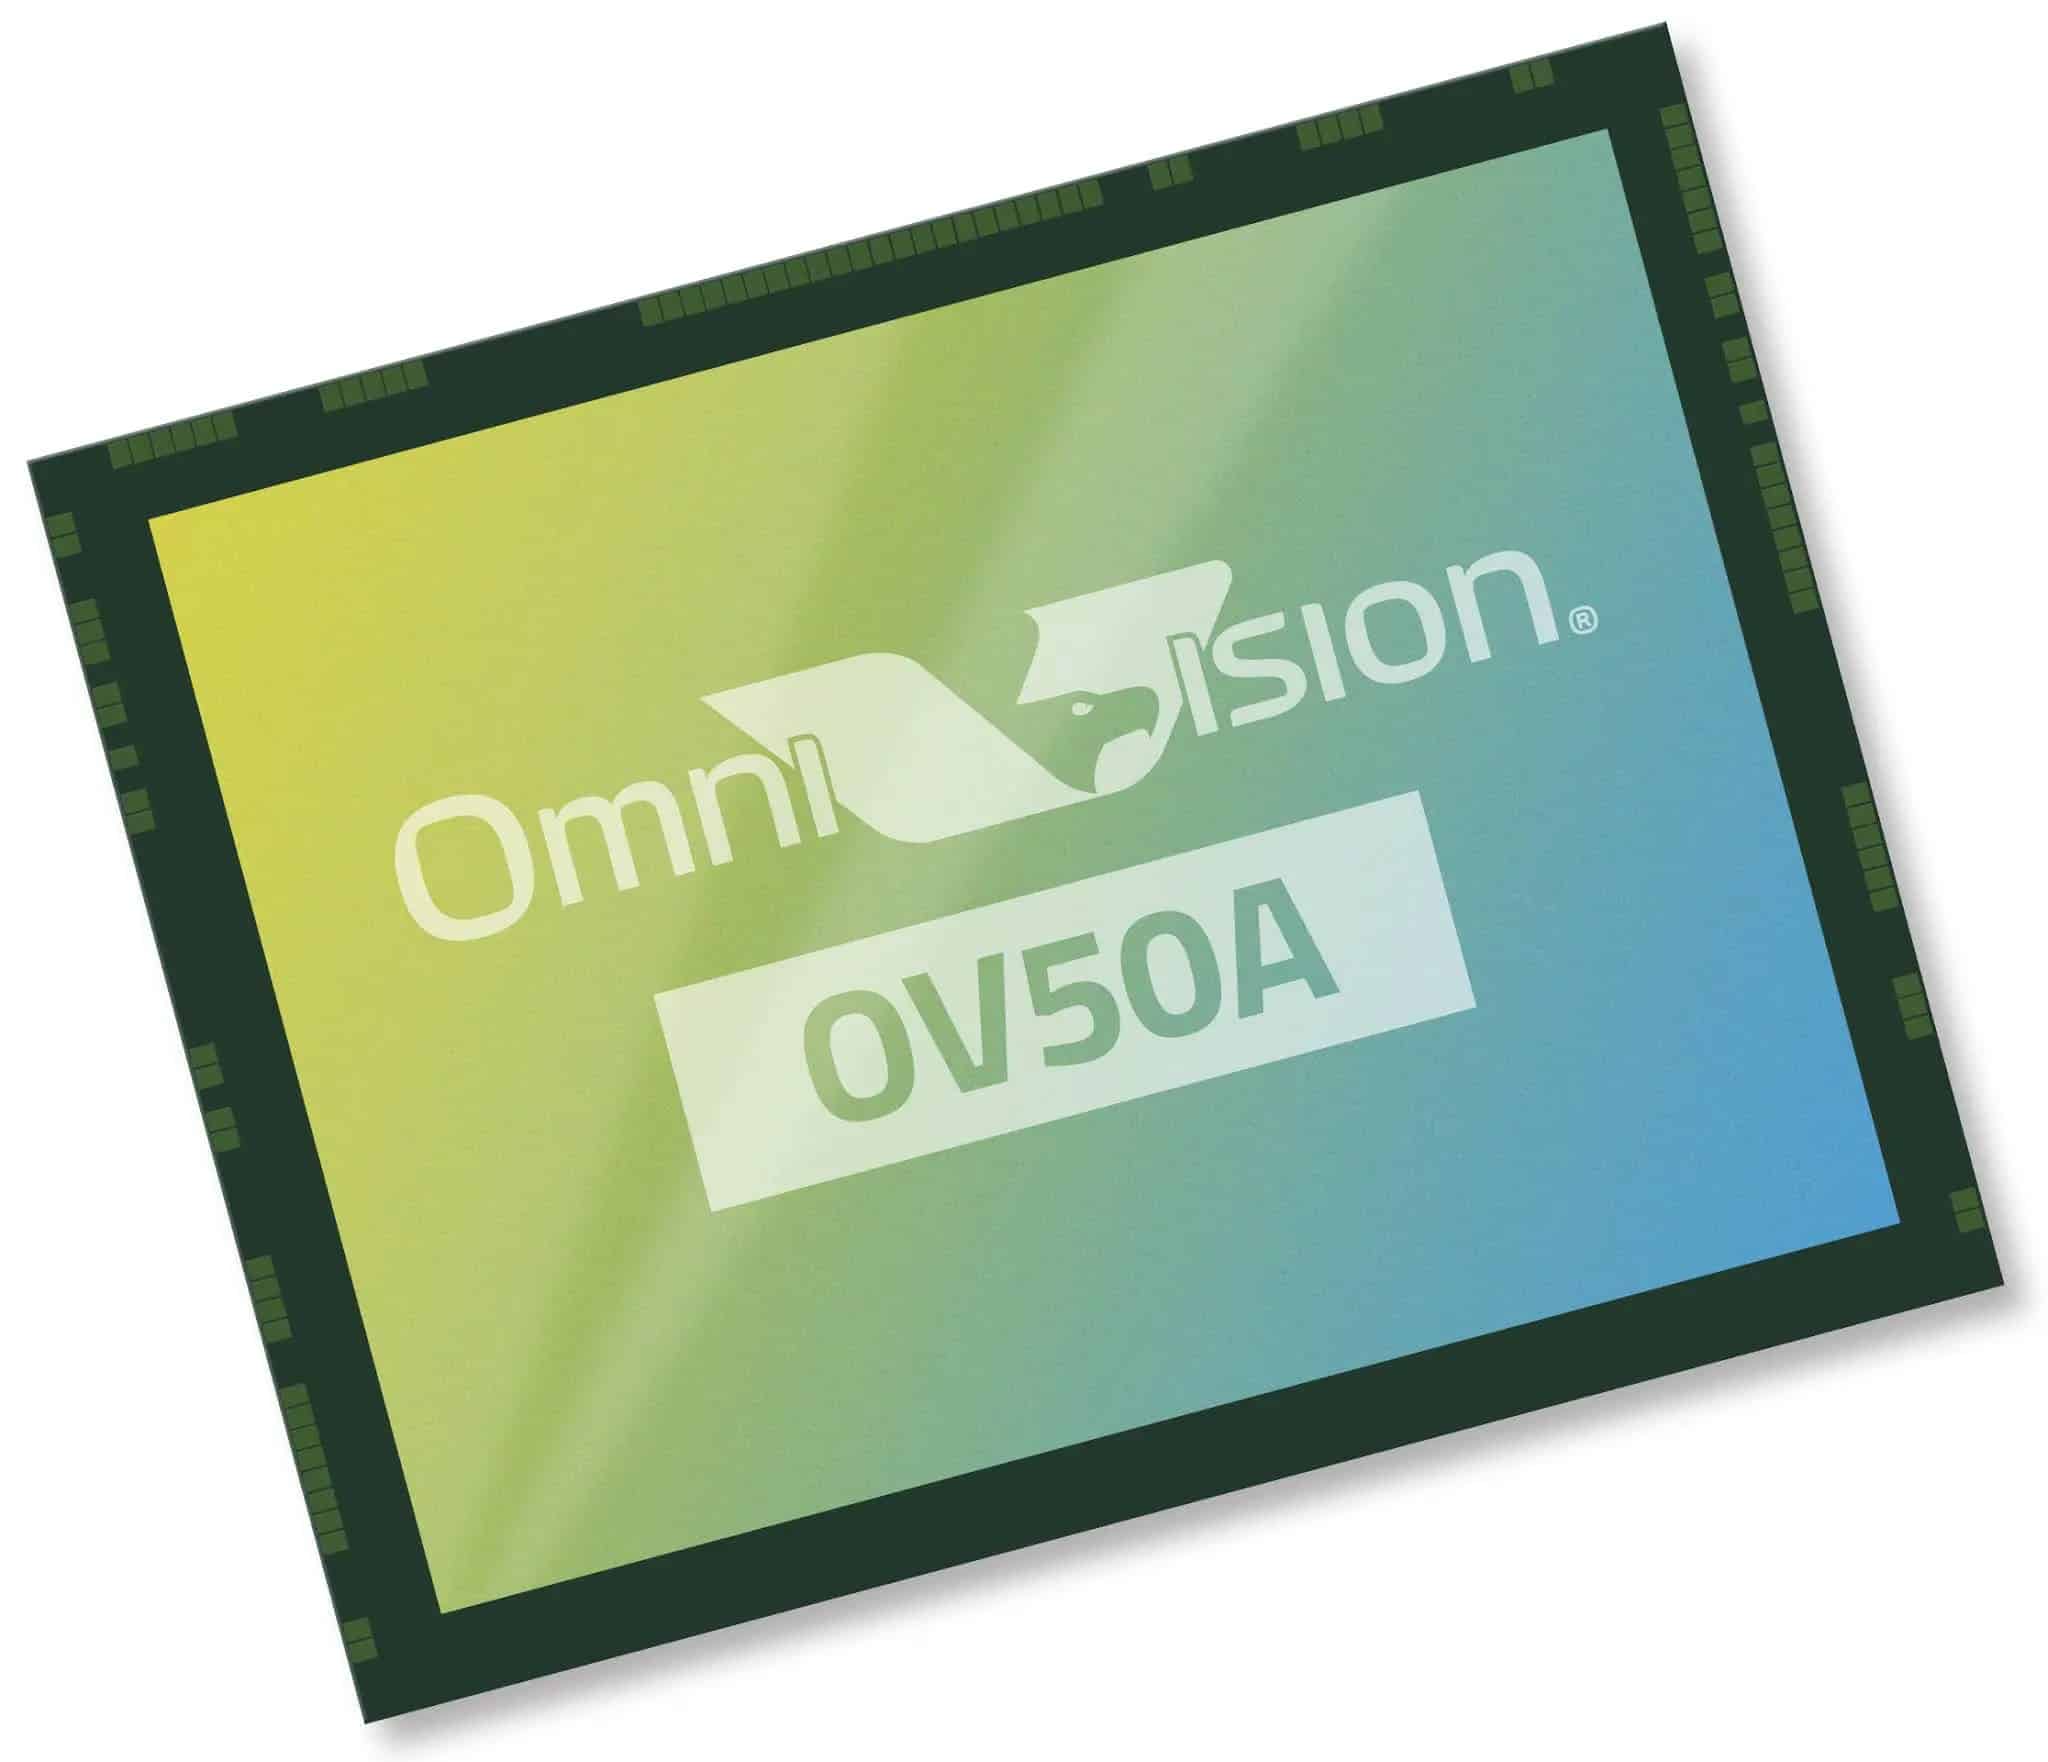 OmniVision ra mắt cảm biến ảnh 50MP OV50A cho smartphone với khả năng lấy nét theo pha nhanh như DSLR